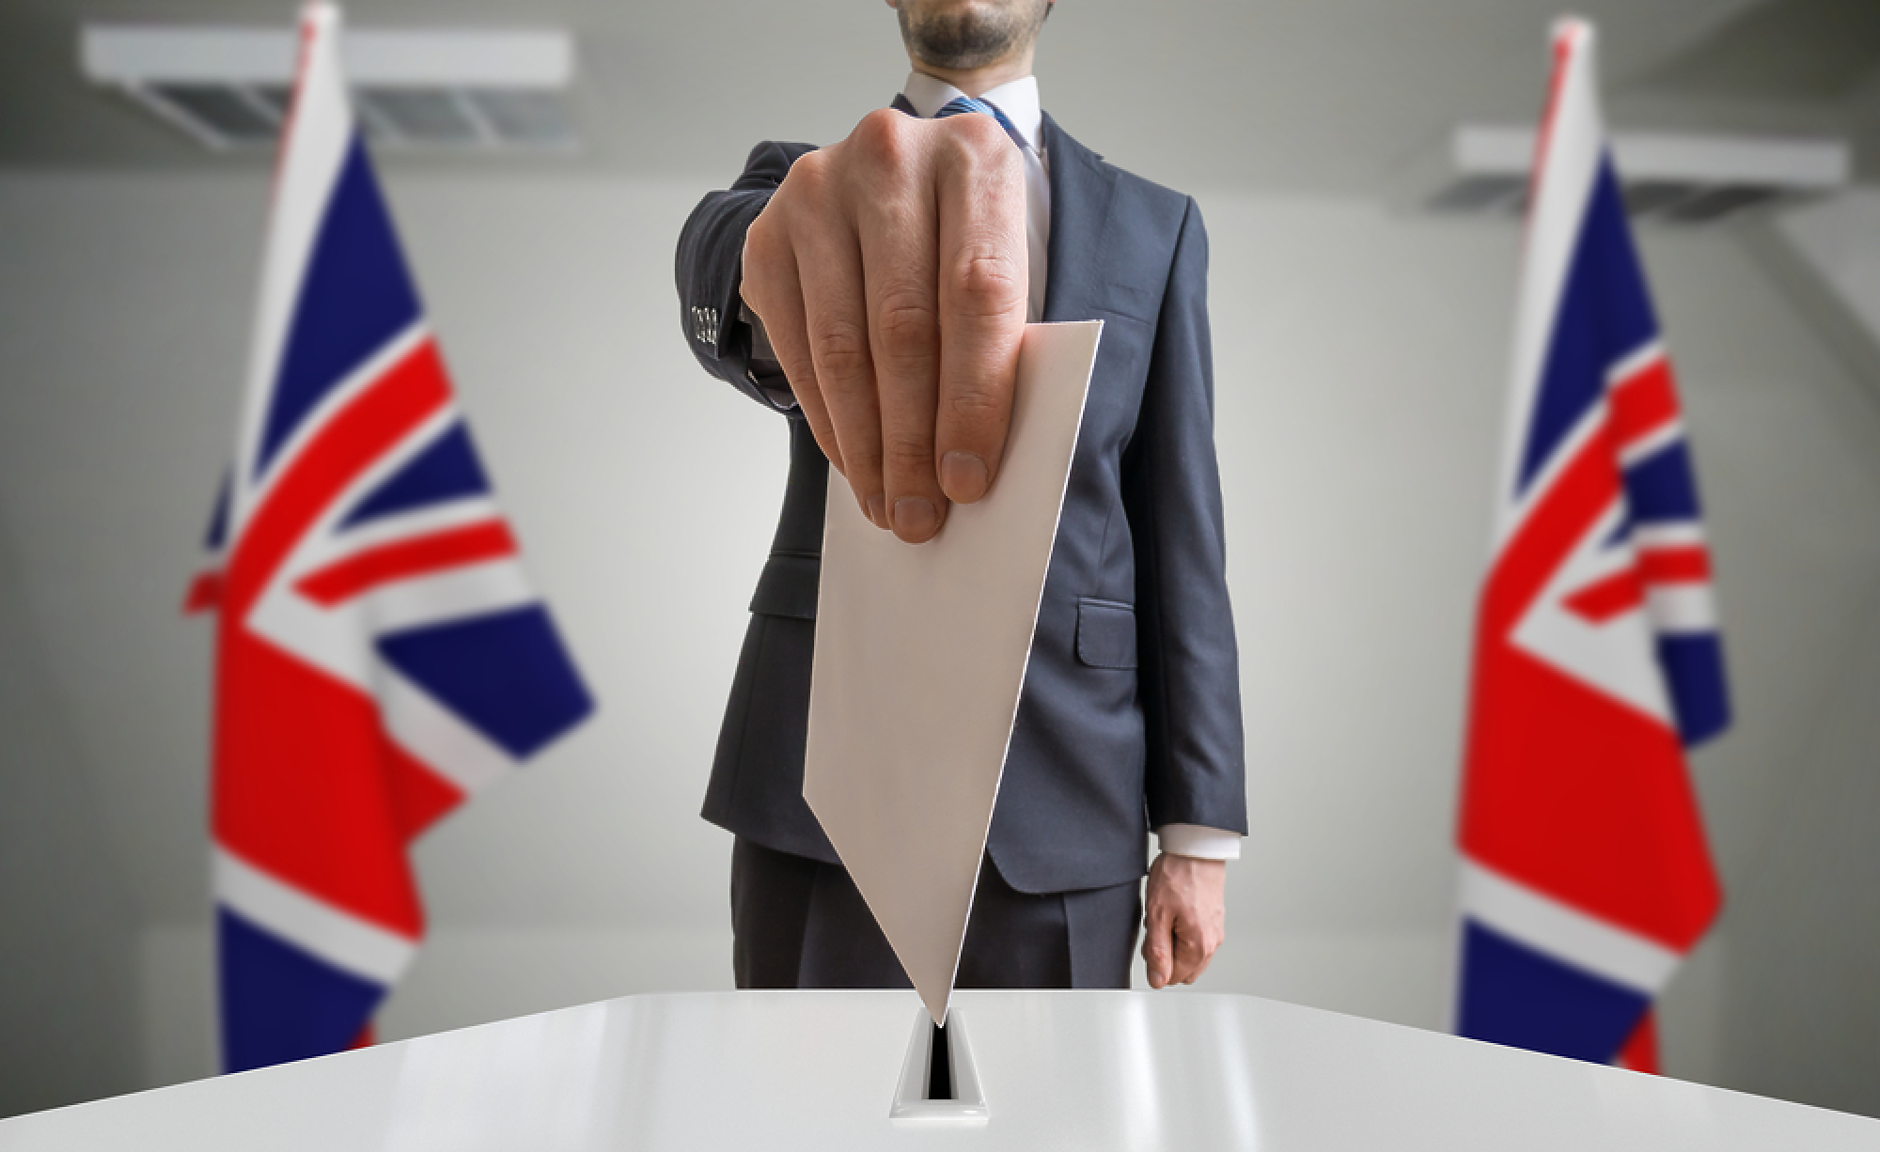 Лейбърсти и либералдемократи водят на местните избори в Англия